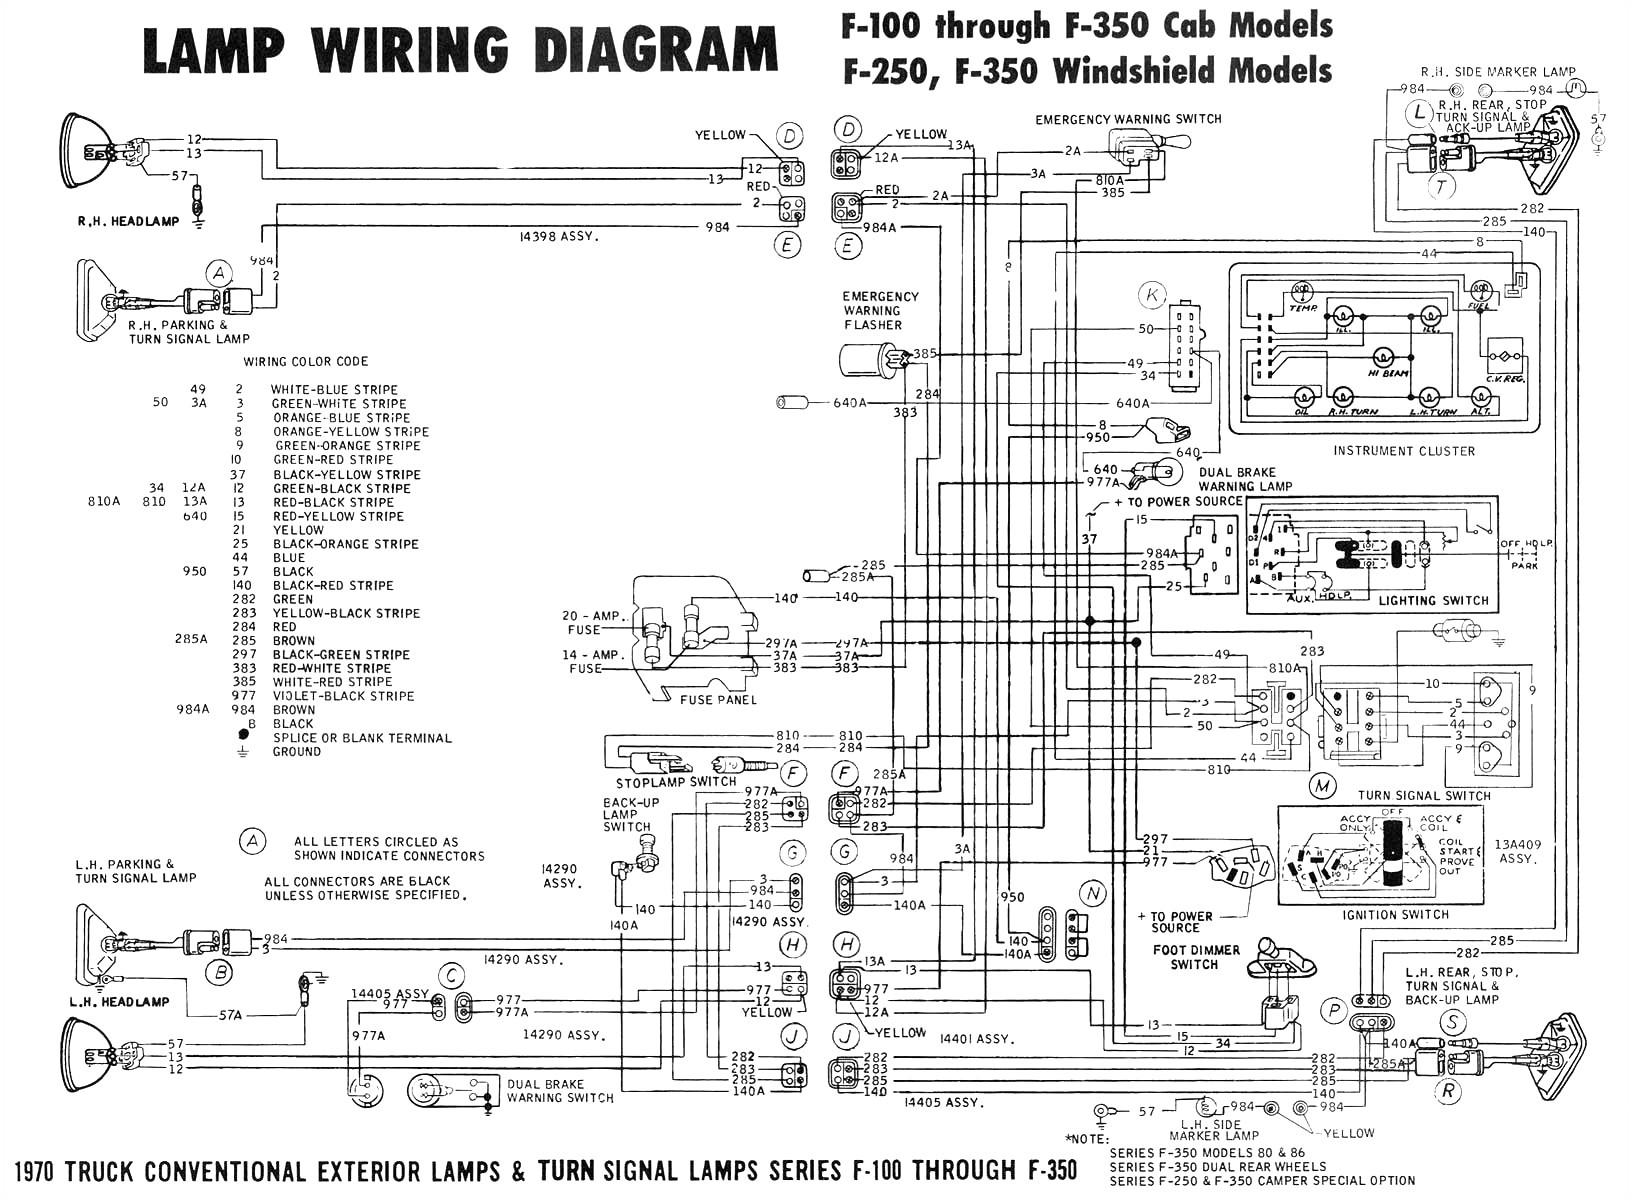 89 tpi ecm wiring diagram schematic wiring diagram view 165 ecm wiring diagram